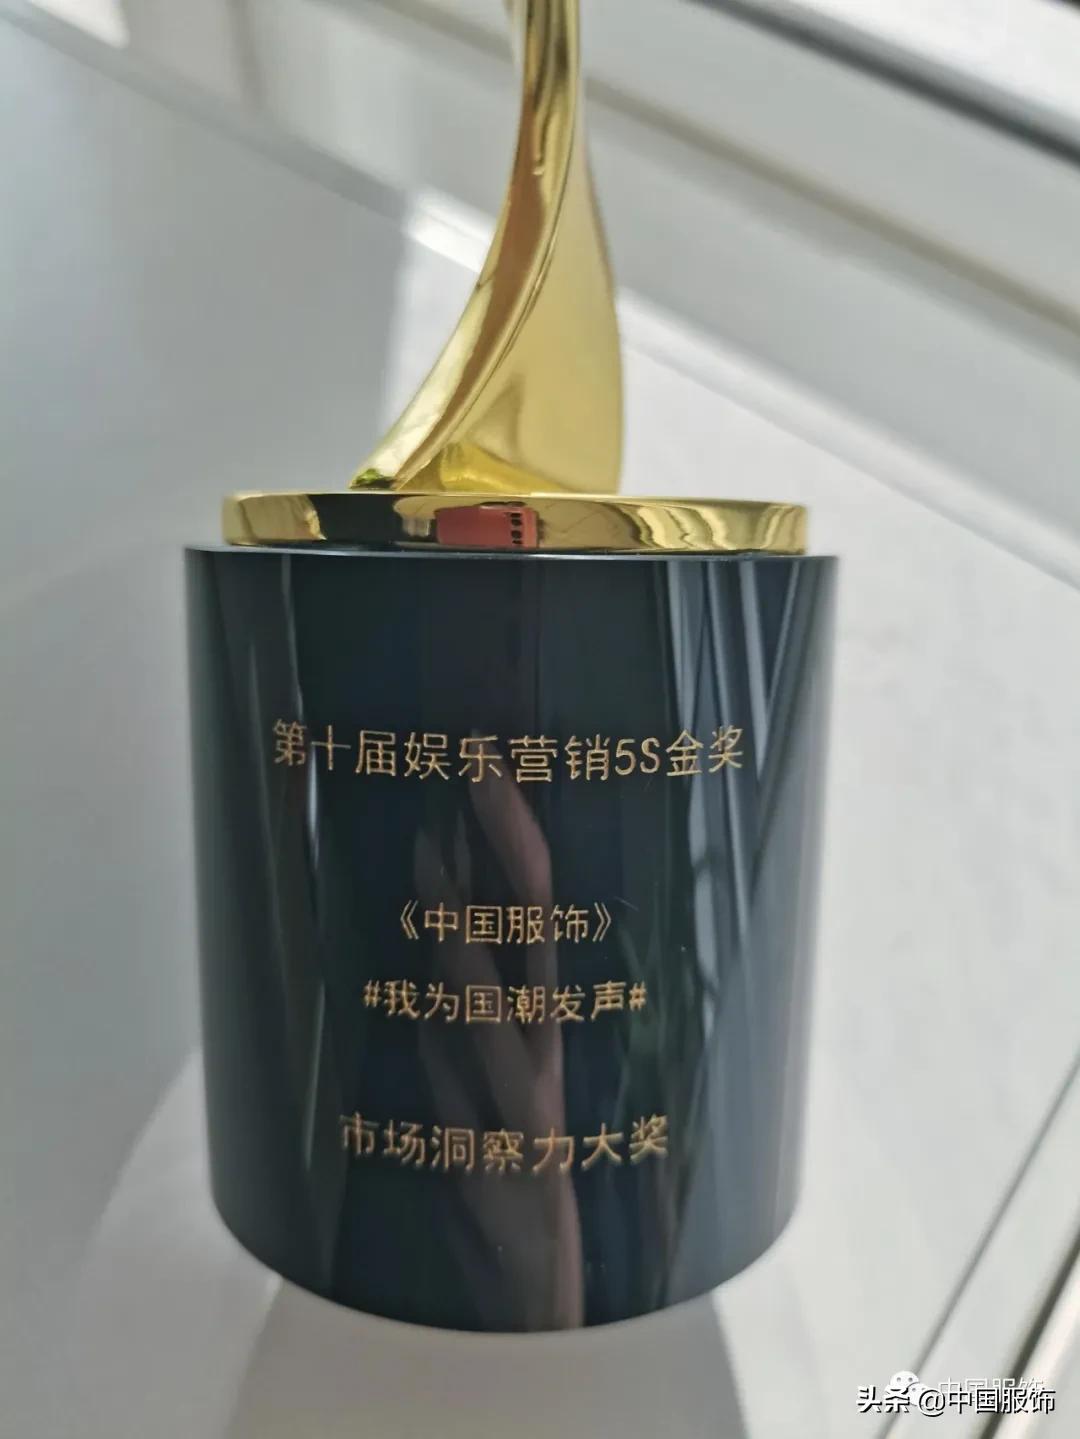 第十届娱乐营销5S金奖揭晓，《中国服饰》斩获“市场洞察力大奖”